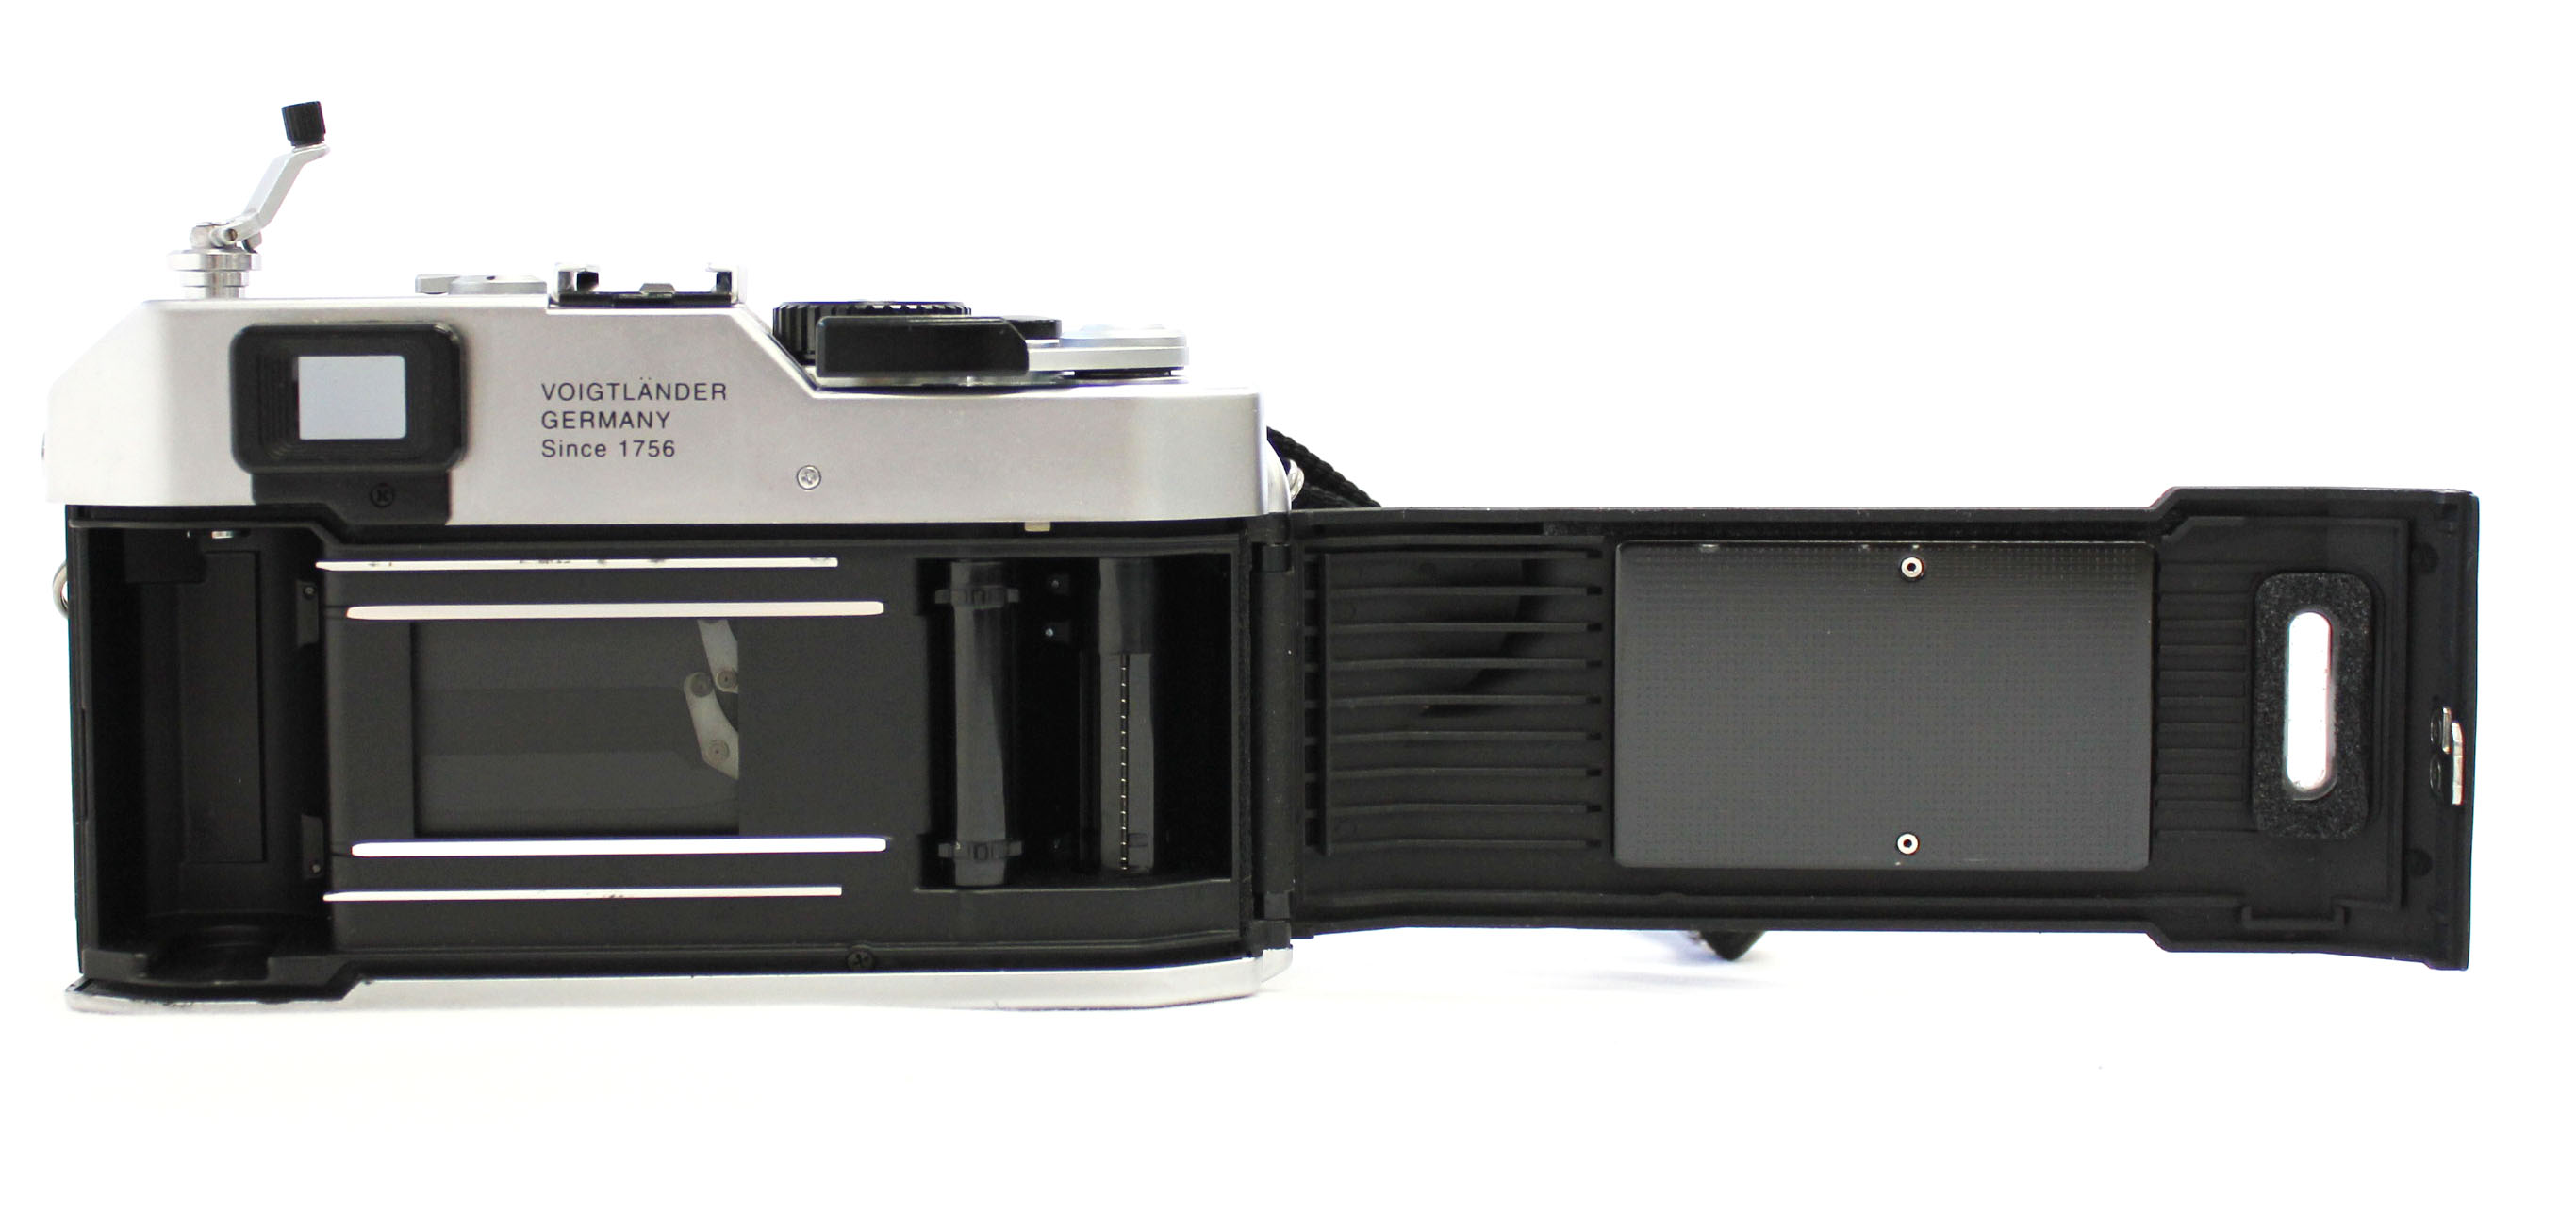  Voigtlander Bessa R Rangefinder 35mm Film Camera L39 LTM from Japan Photo 9